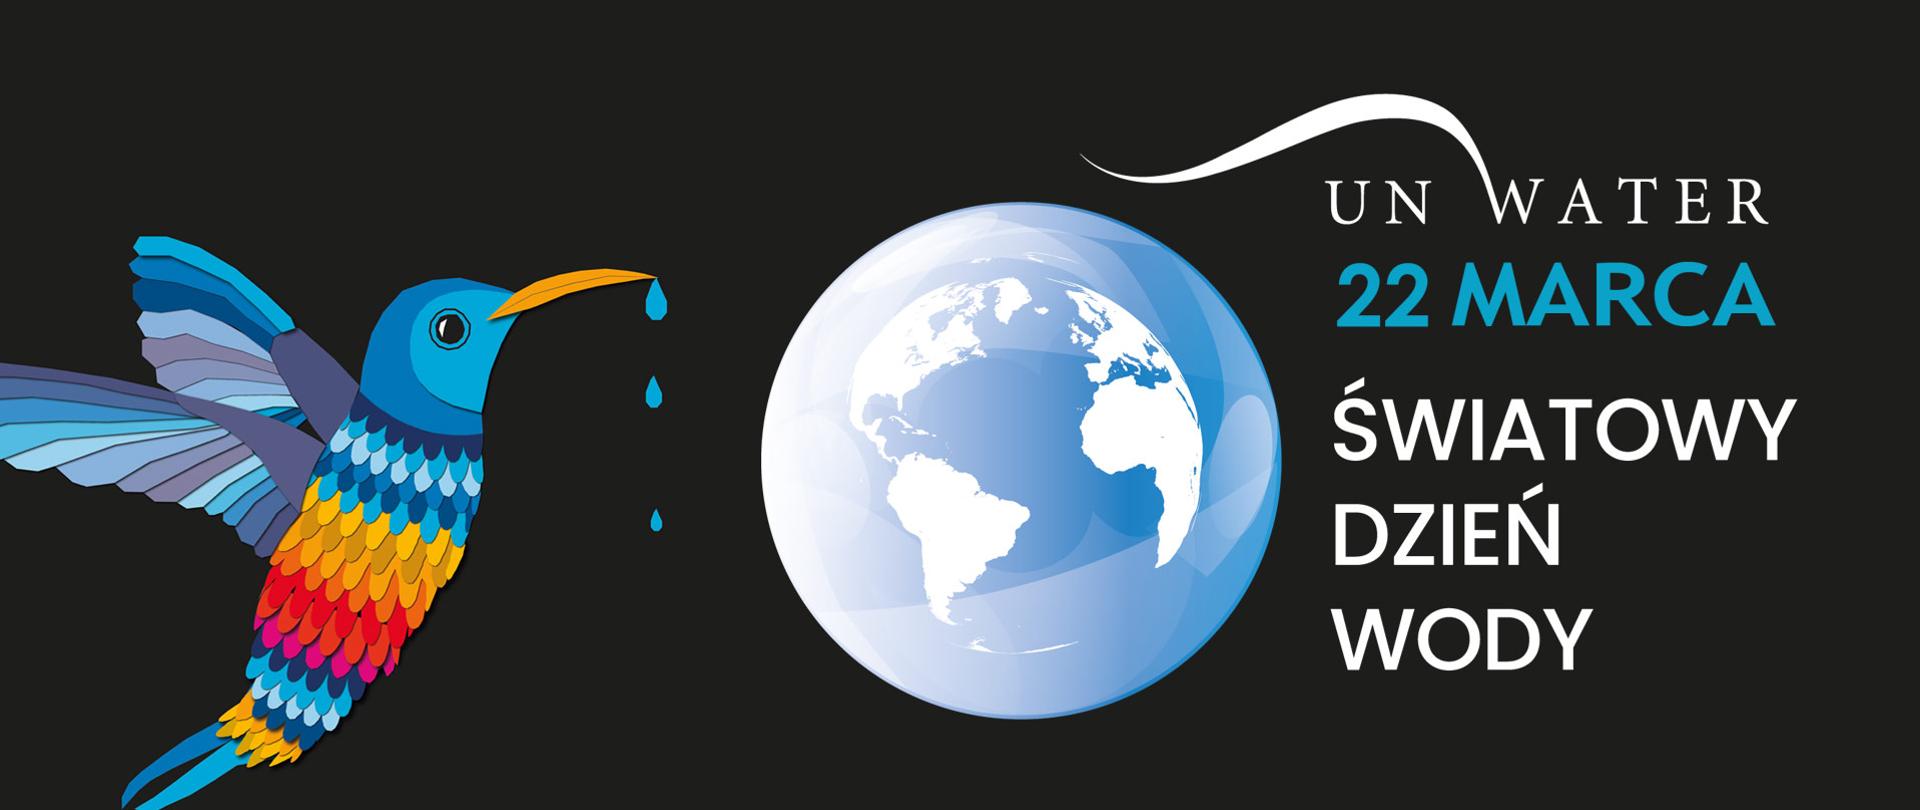 Grafika przedstawiająca kolibra z którego dzioba kapie woda. Obok logo z kulą ziemską i napisem: UN WATER, Światowy Dzień Wody. 22 marca 